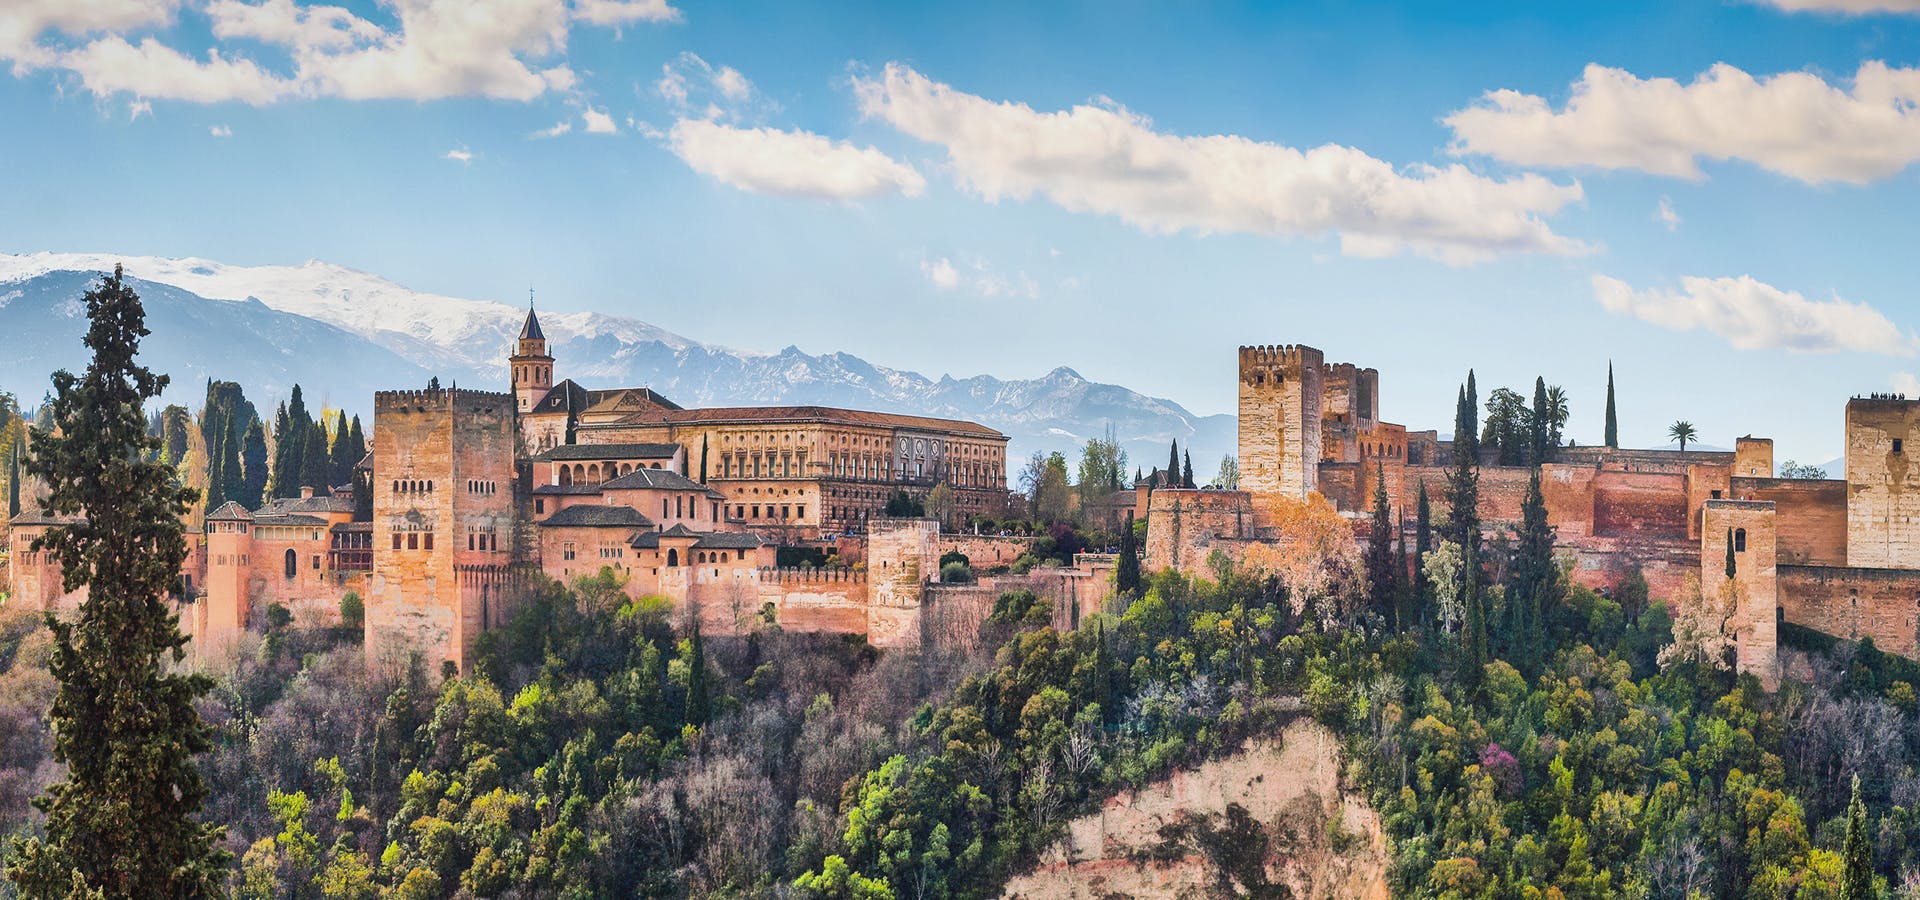 Visite avec billets pour toute l'Alhambra (palais, Alcazaba, Generalife, jardins)